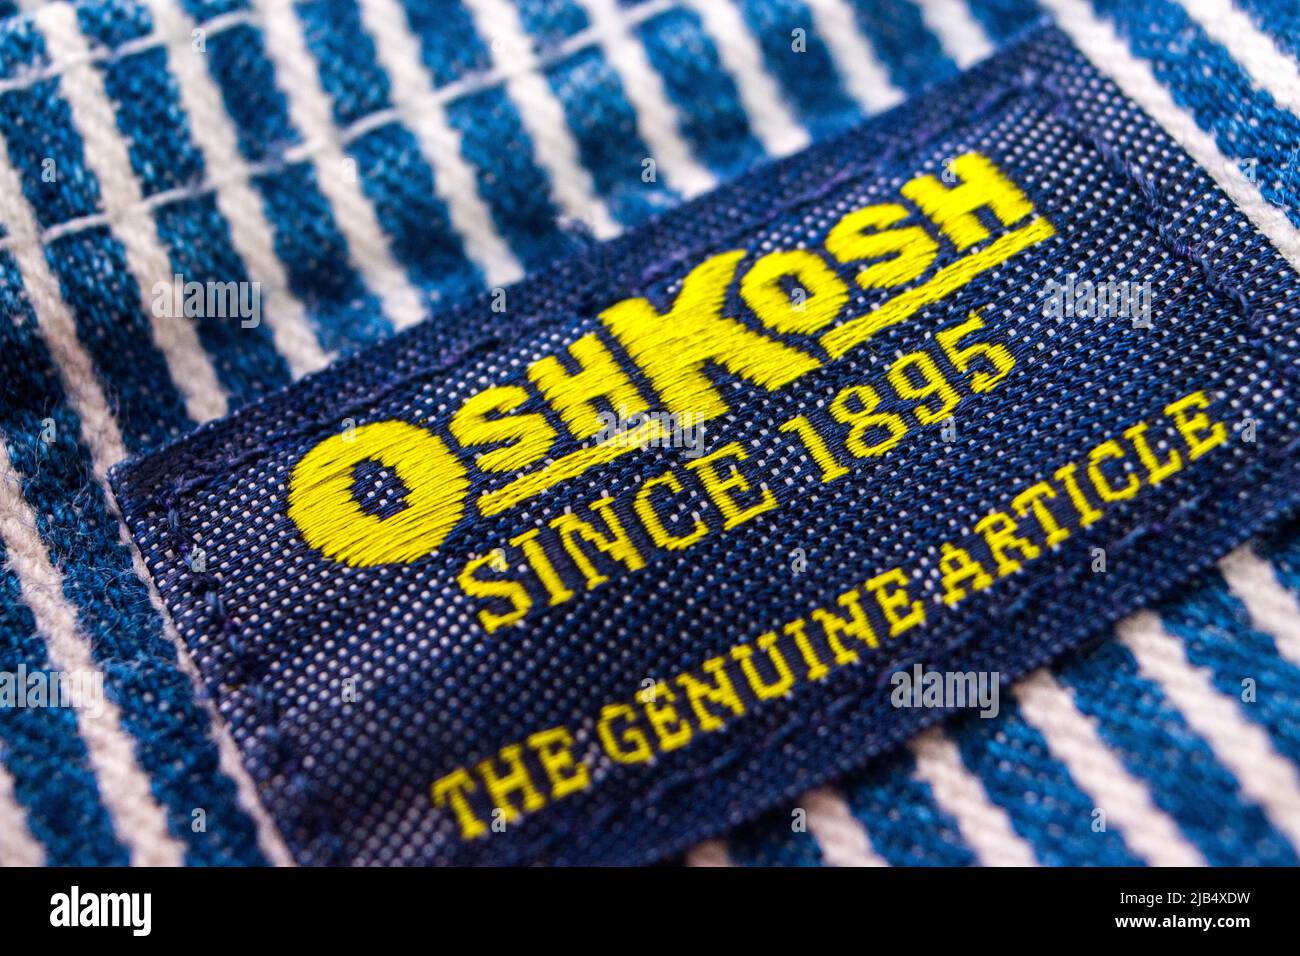 Il marchio di Oshkosh sulle sue tute a righe in hickory. Oshkosh B'gosh è un'azienda di abbigliamento statunitense fondata a Oshkosh, Wisconsin, nel 1895. Foto Stock